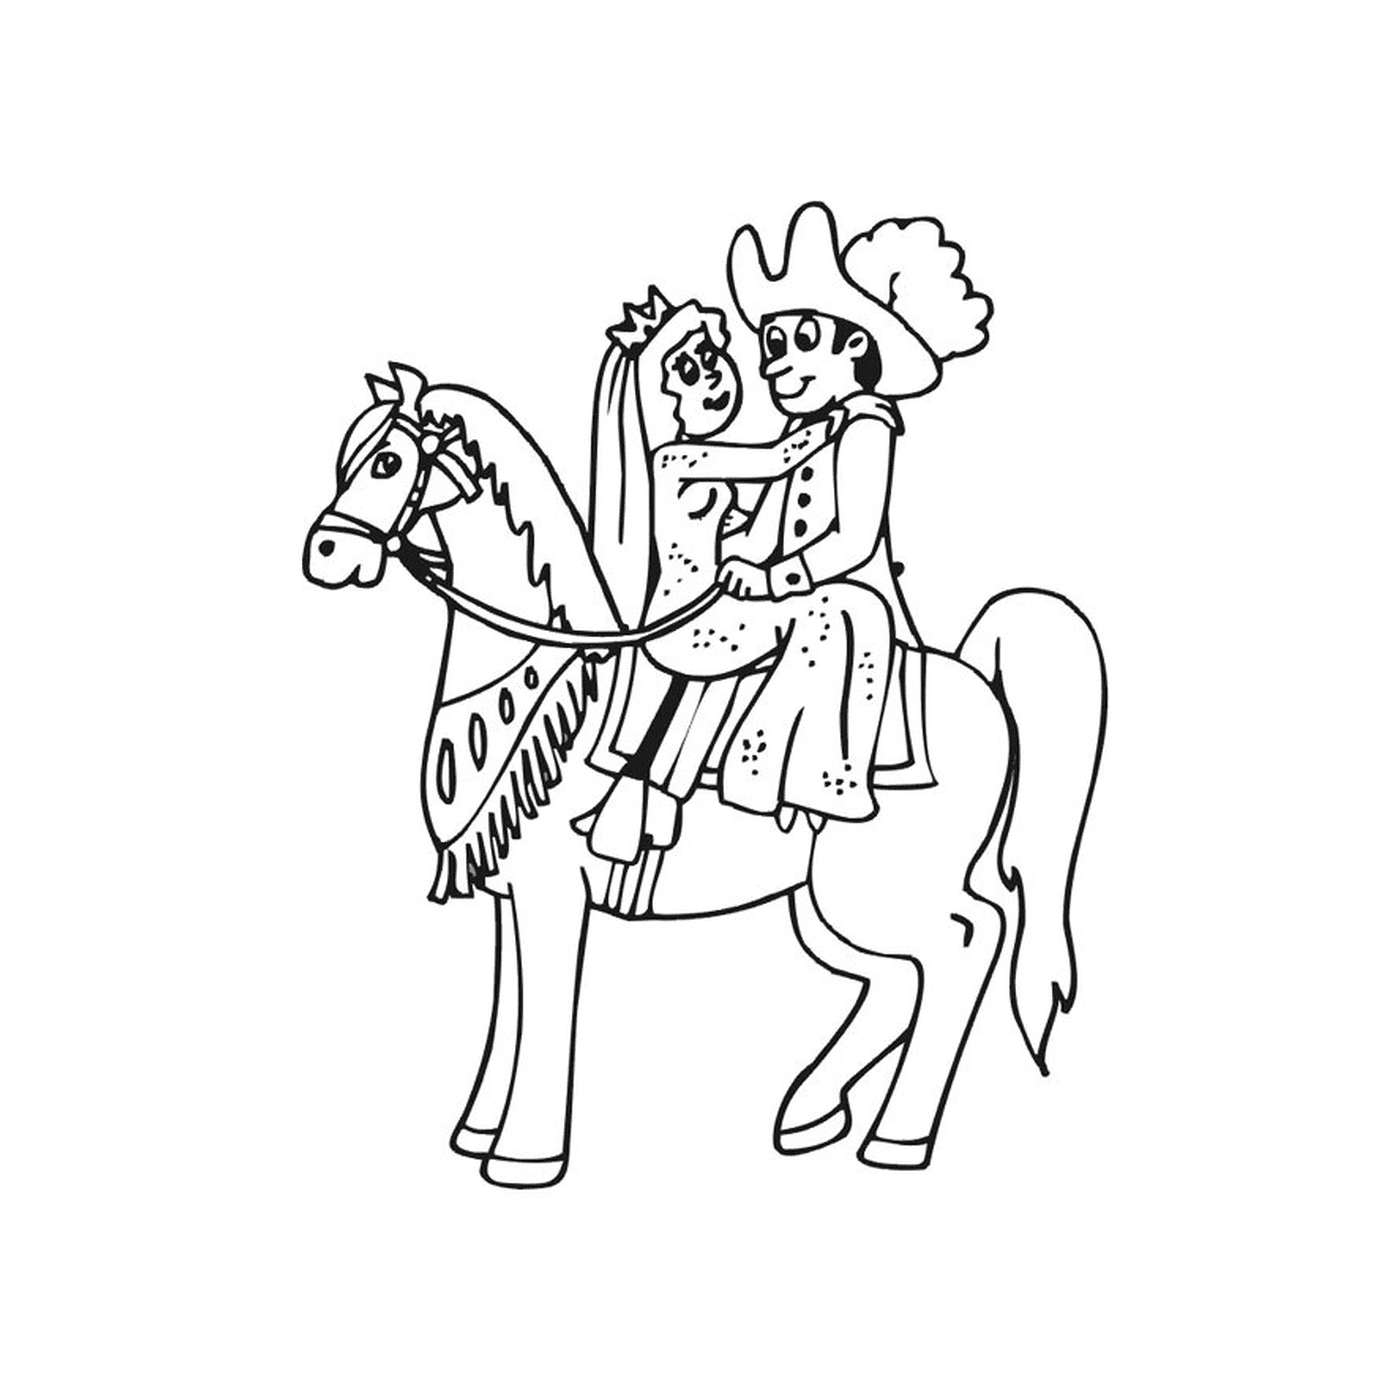  Principessa Cavallo - Un uomo seduto su un cavallo marrone 